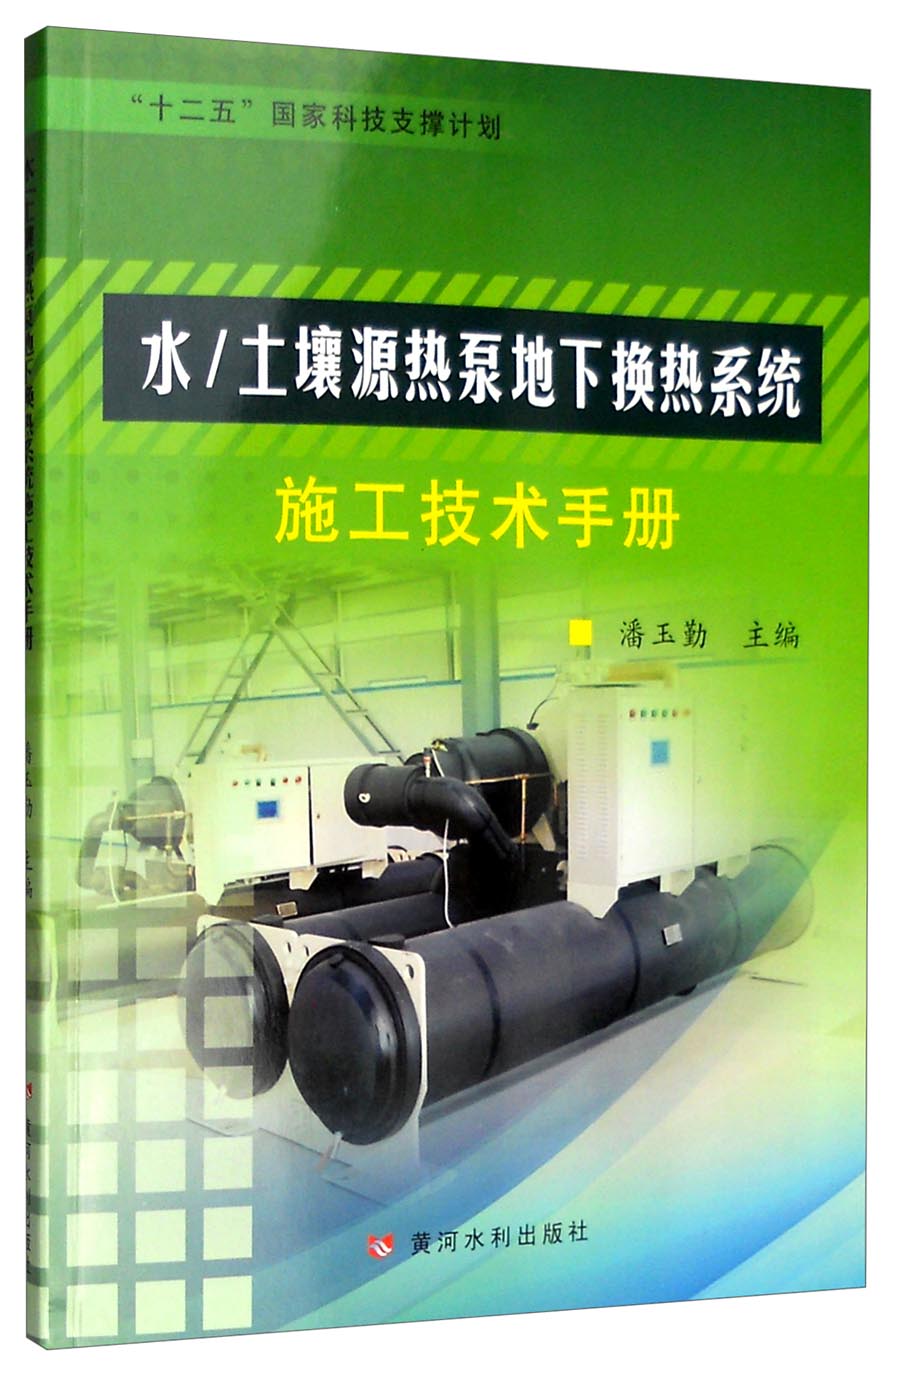 水/土壤源热泵地下换热系统系统施工技术手册